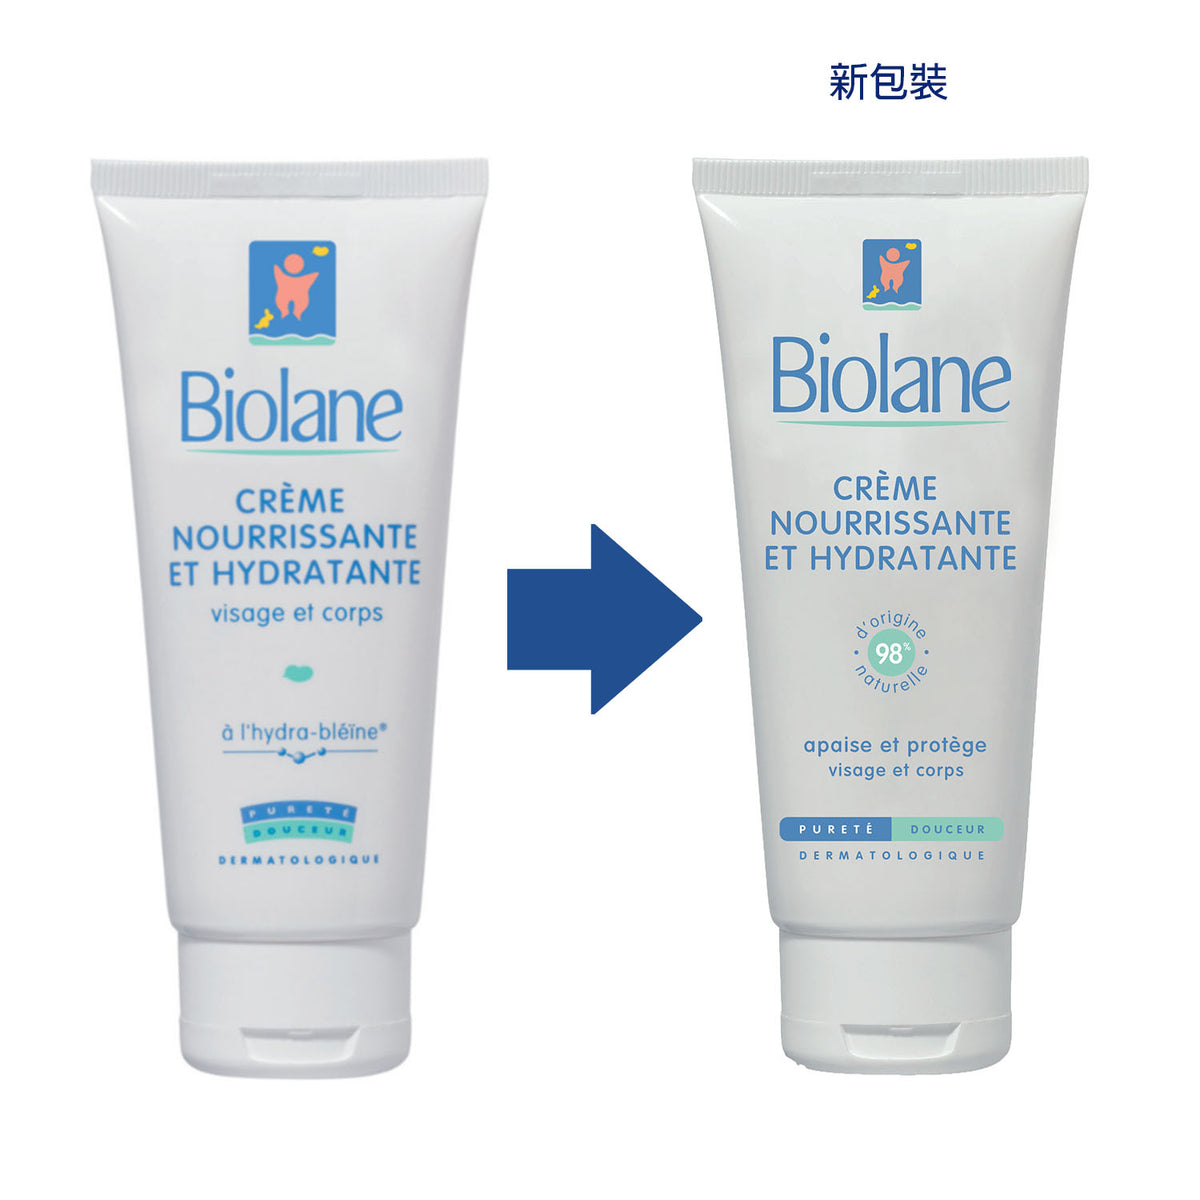 Biolane Expert Crème Change Bio 75 ml - 51202 - Protege et